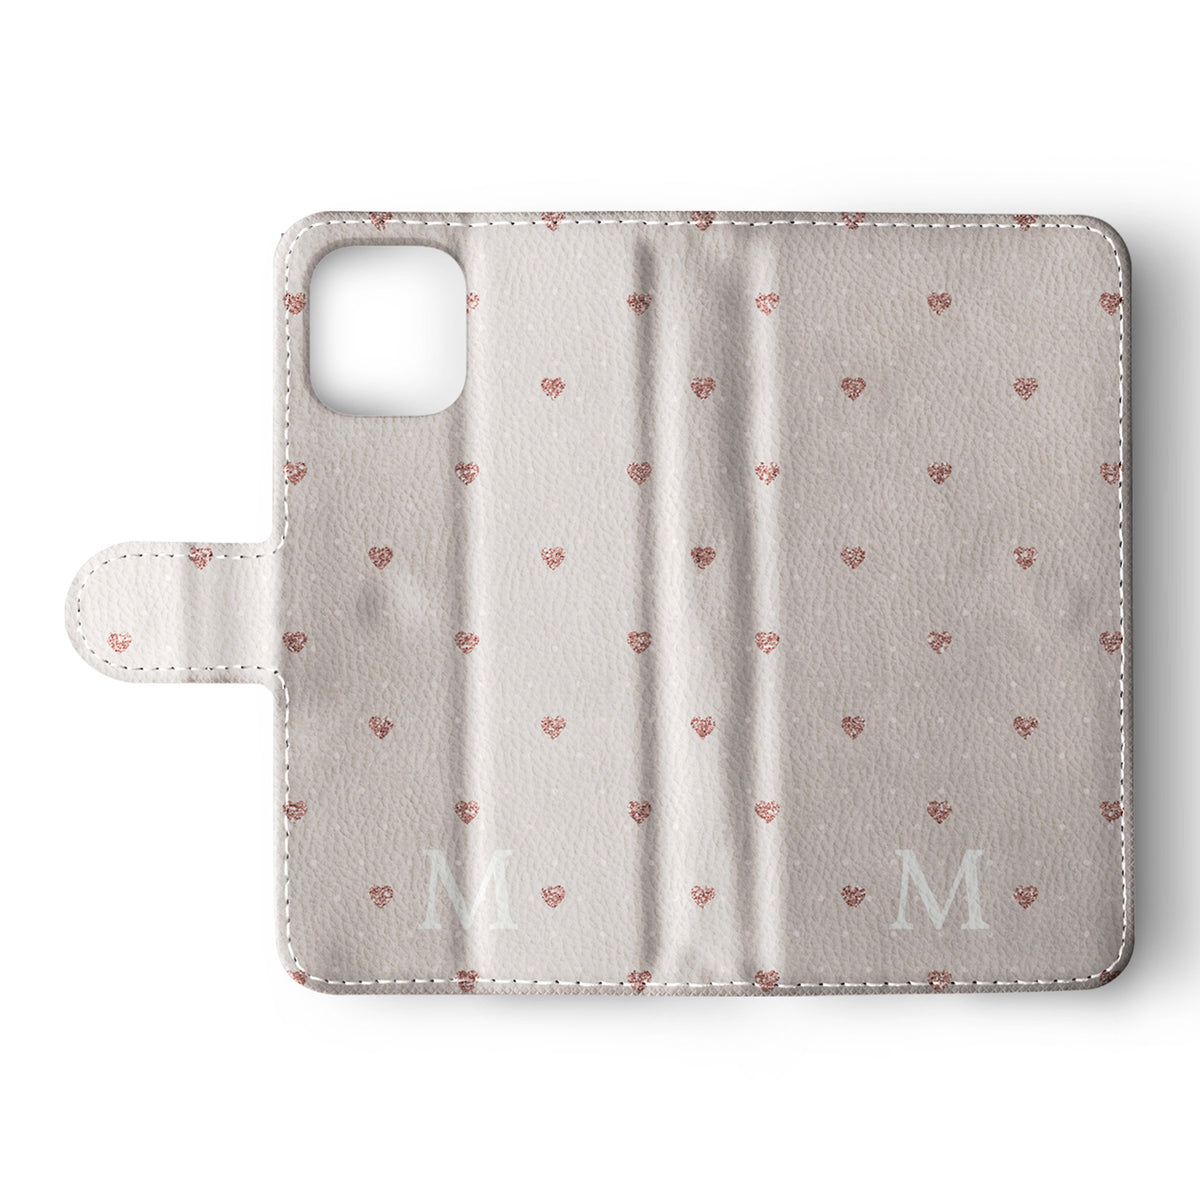 Personalised Wallet Flip Phone Case Custom Name Polka Hearts Pink